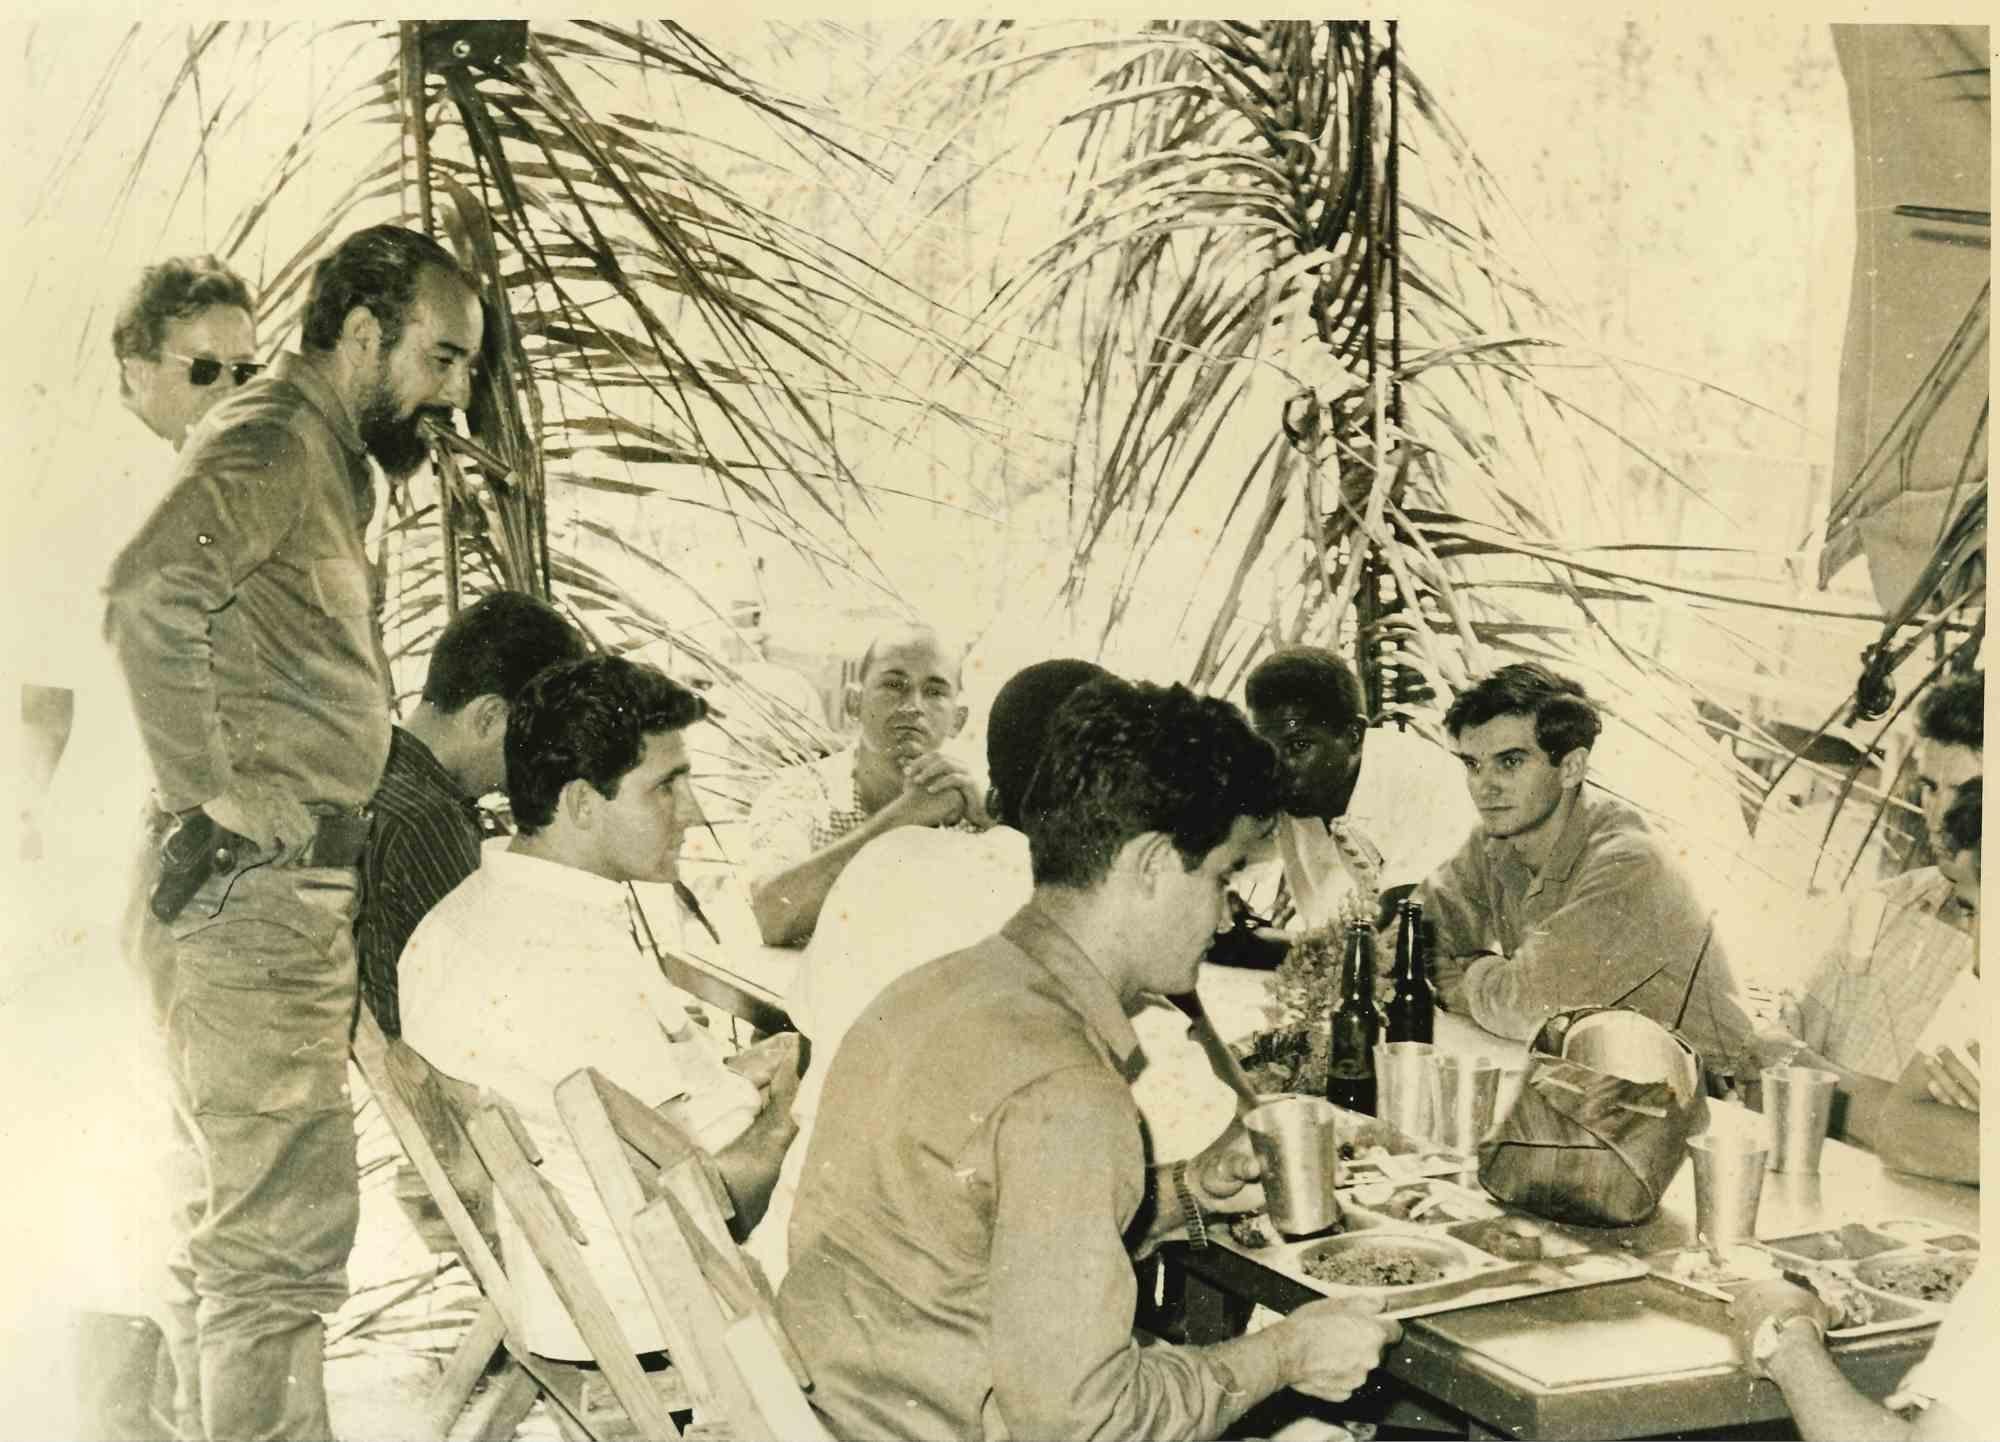 Socialistes cubains - Photo historique - années 1960